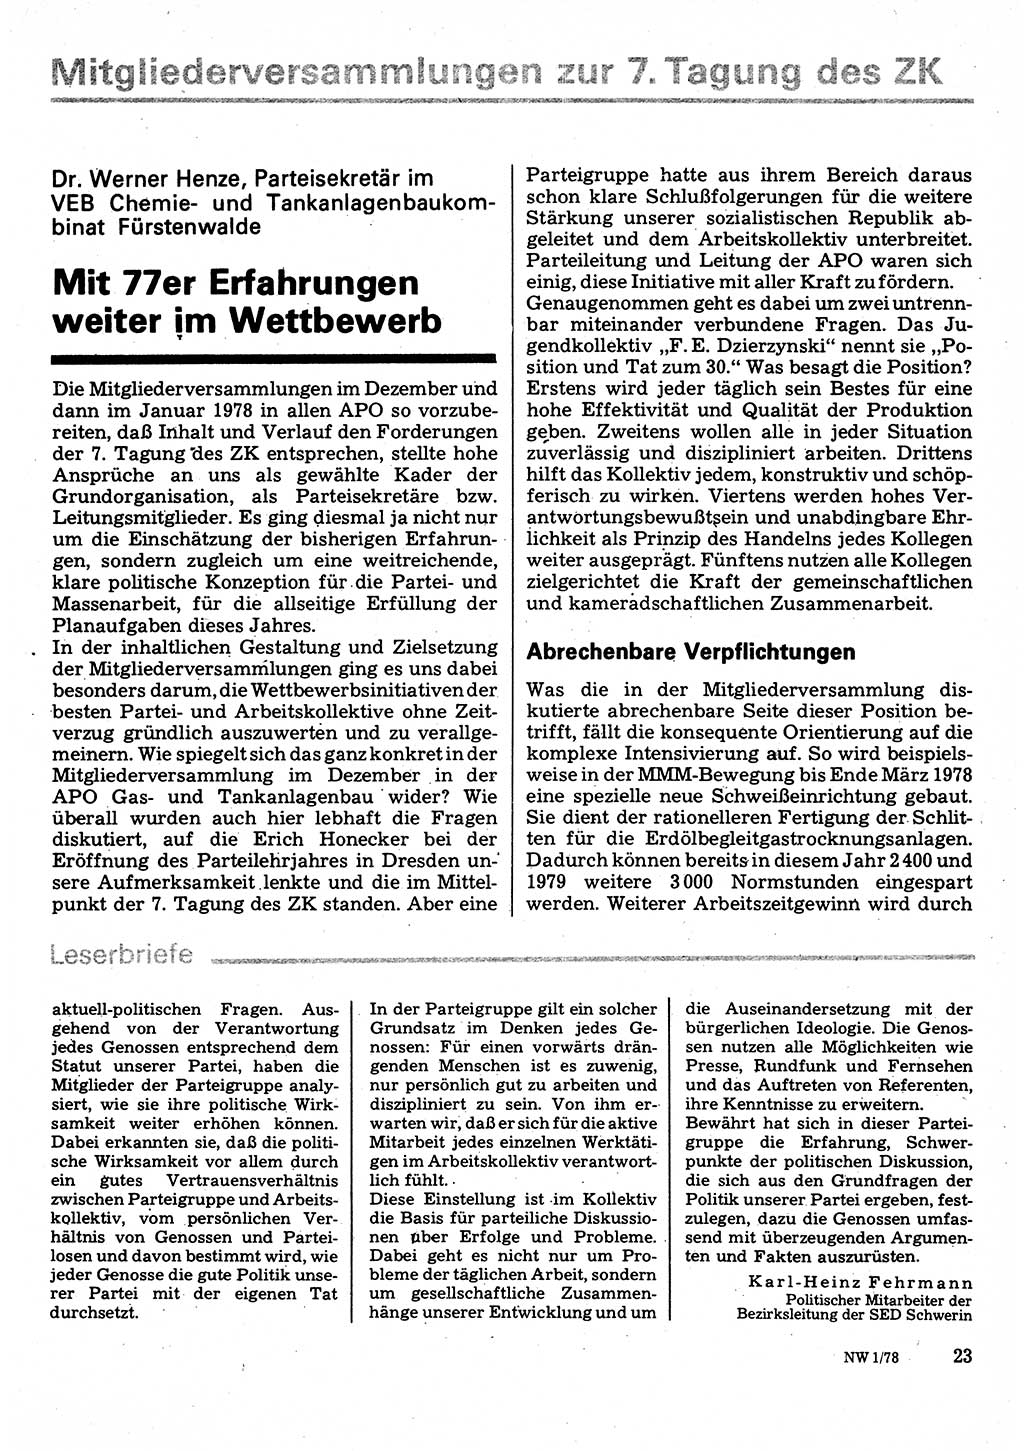 Neuer Weg (NW), Organ des Zentralkomitees (ZK) der SED (Sozialistische Einheitspartei Deutschlands) für Fragen des Parteilebens, 33. Jahrgang [Deutsche Demokratische Republik (DDR)] 1978, Seite 23 (NW ZK SED DDR 1978, S. 23)